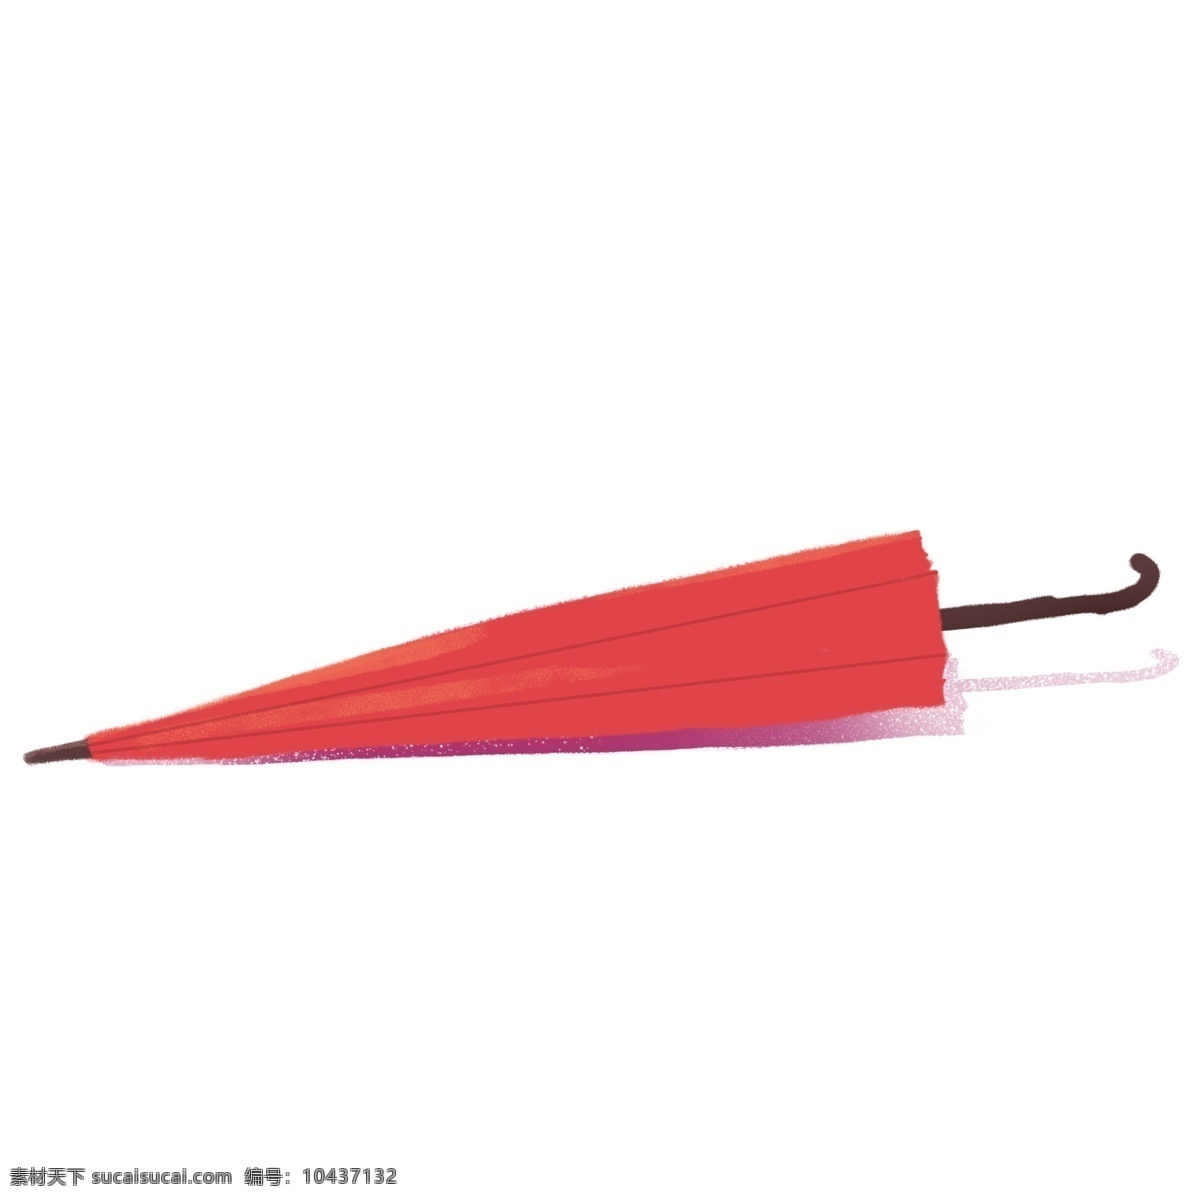 一把 红色 小 雨伞 免 抠 图 伞 装饰物 免抠图 红色的小雨伞 红色小雨伞 小雨伞 漂亮的伞